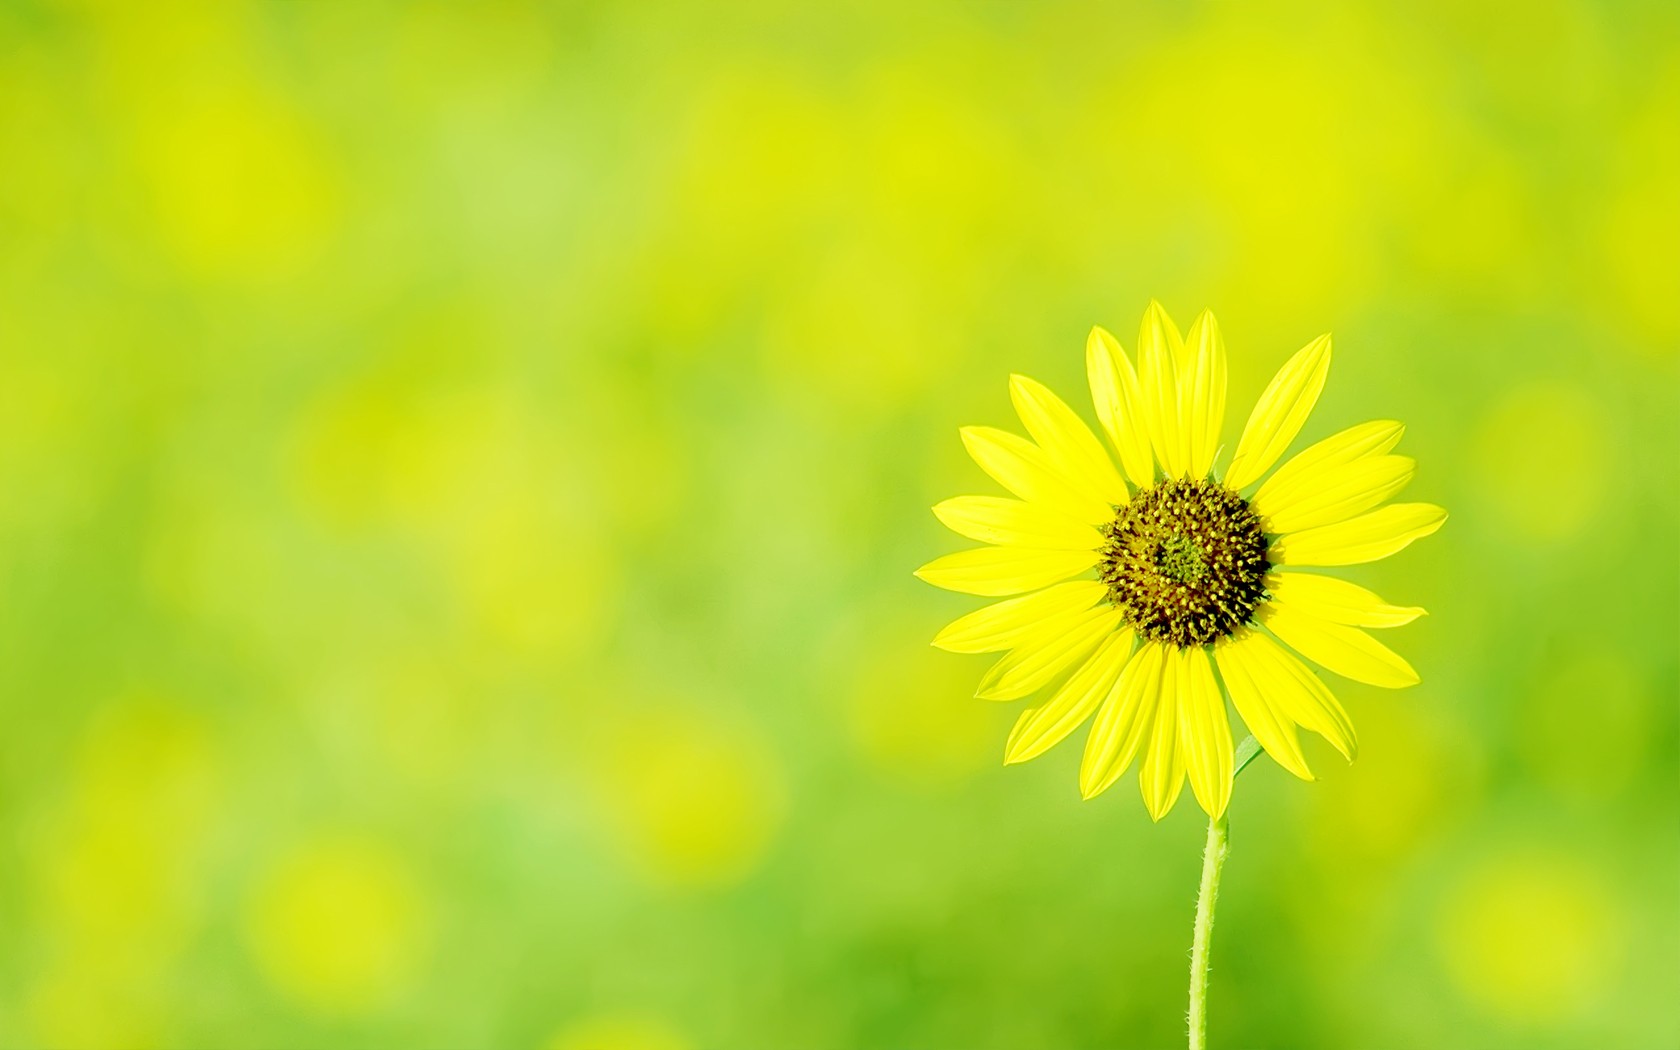 Sunflower desktop wallpaper